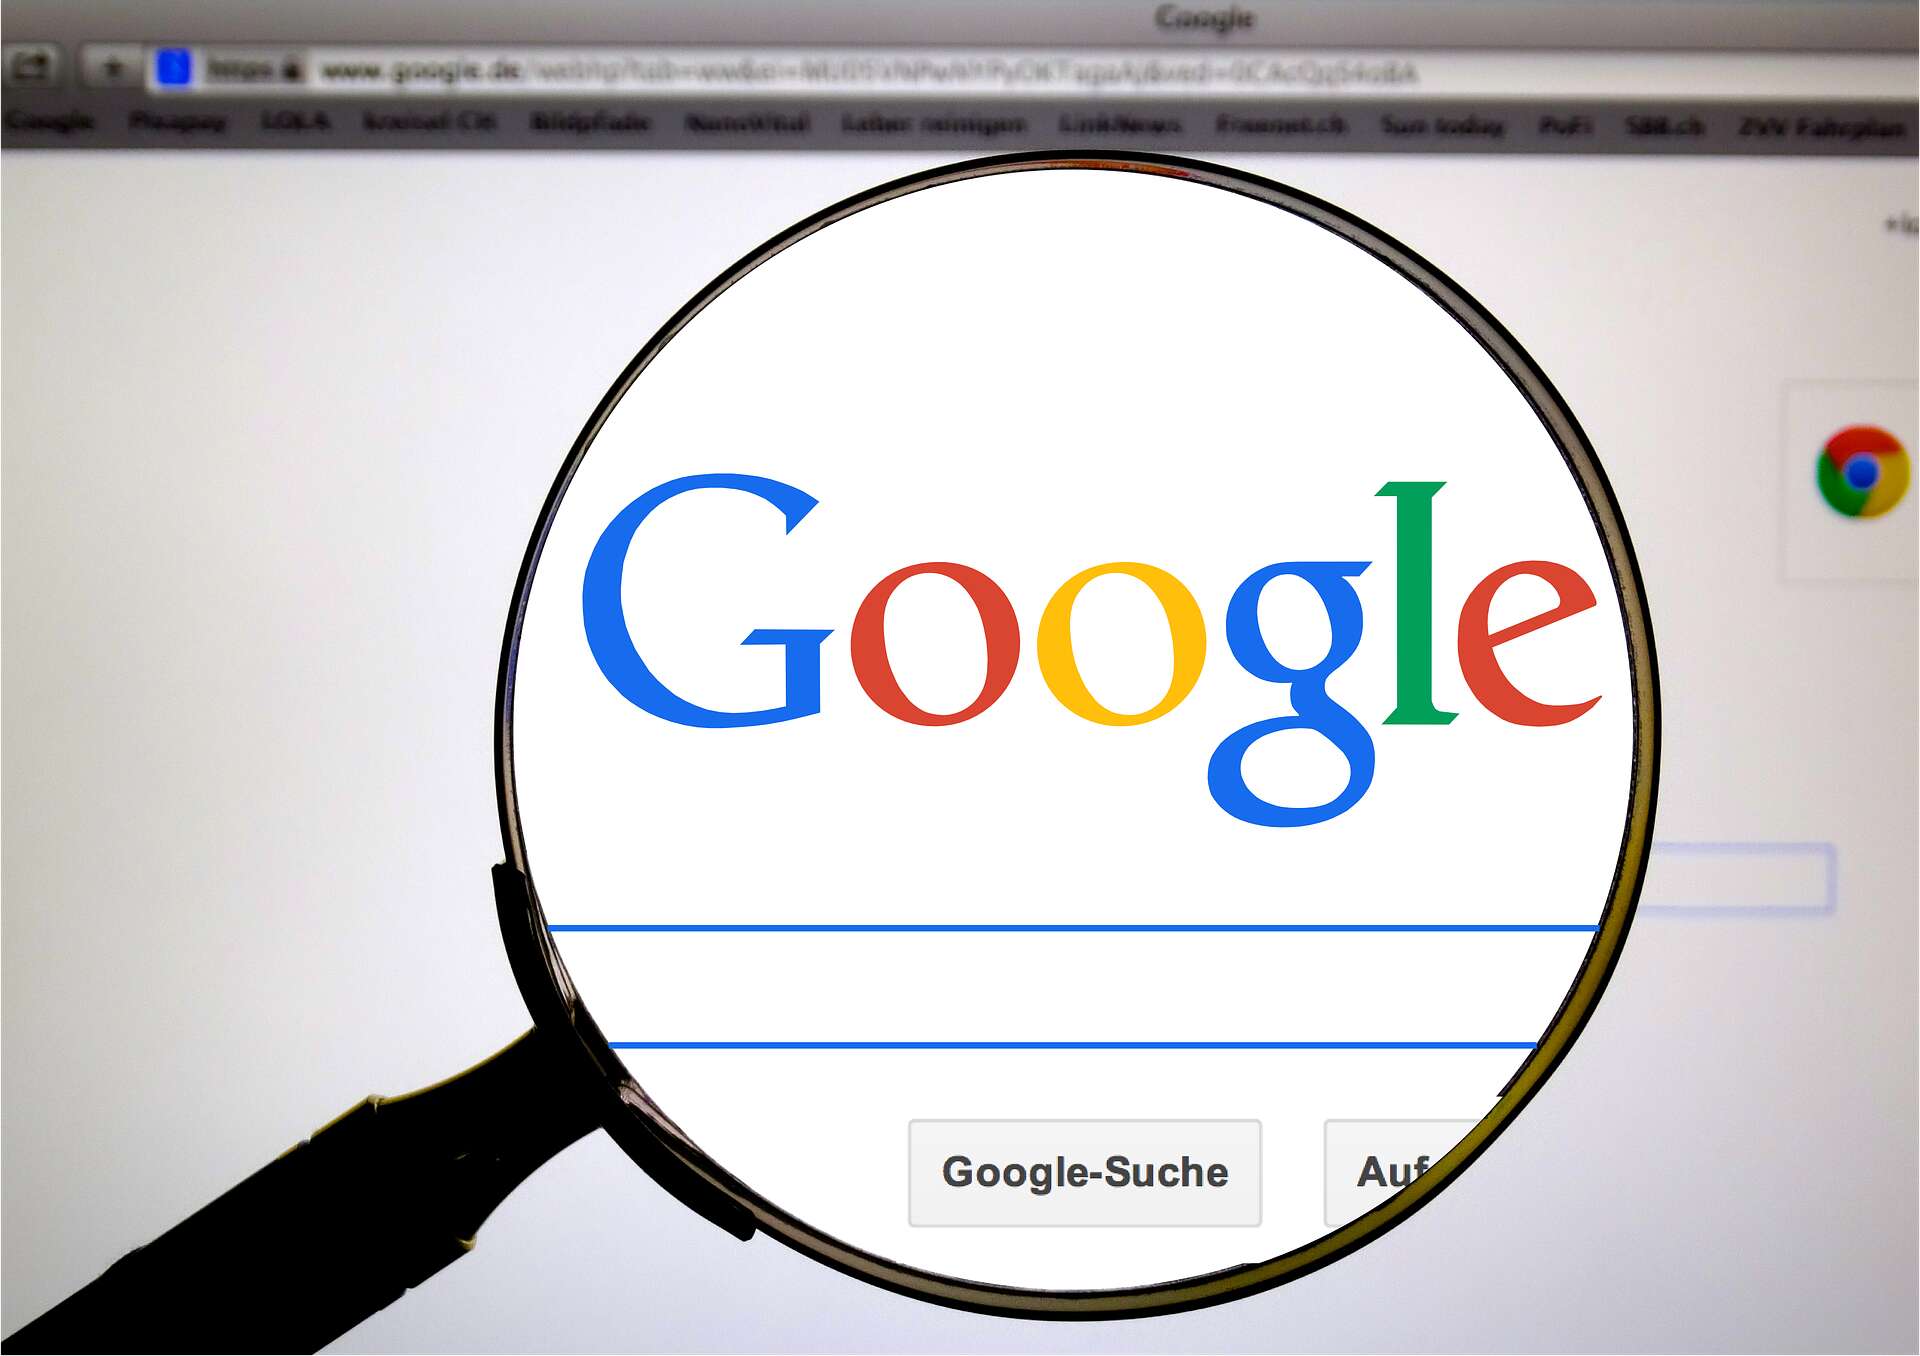 États-Unis : L'historique des recherches sur Google employé pour identifier les coupables d'un incendie